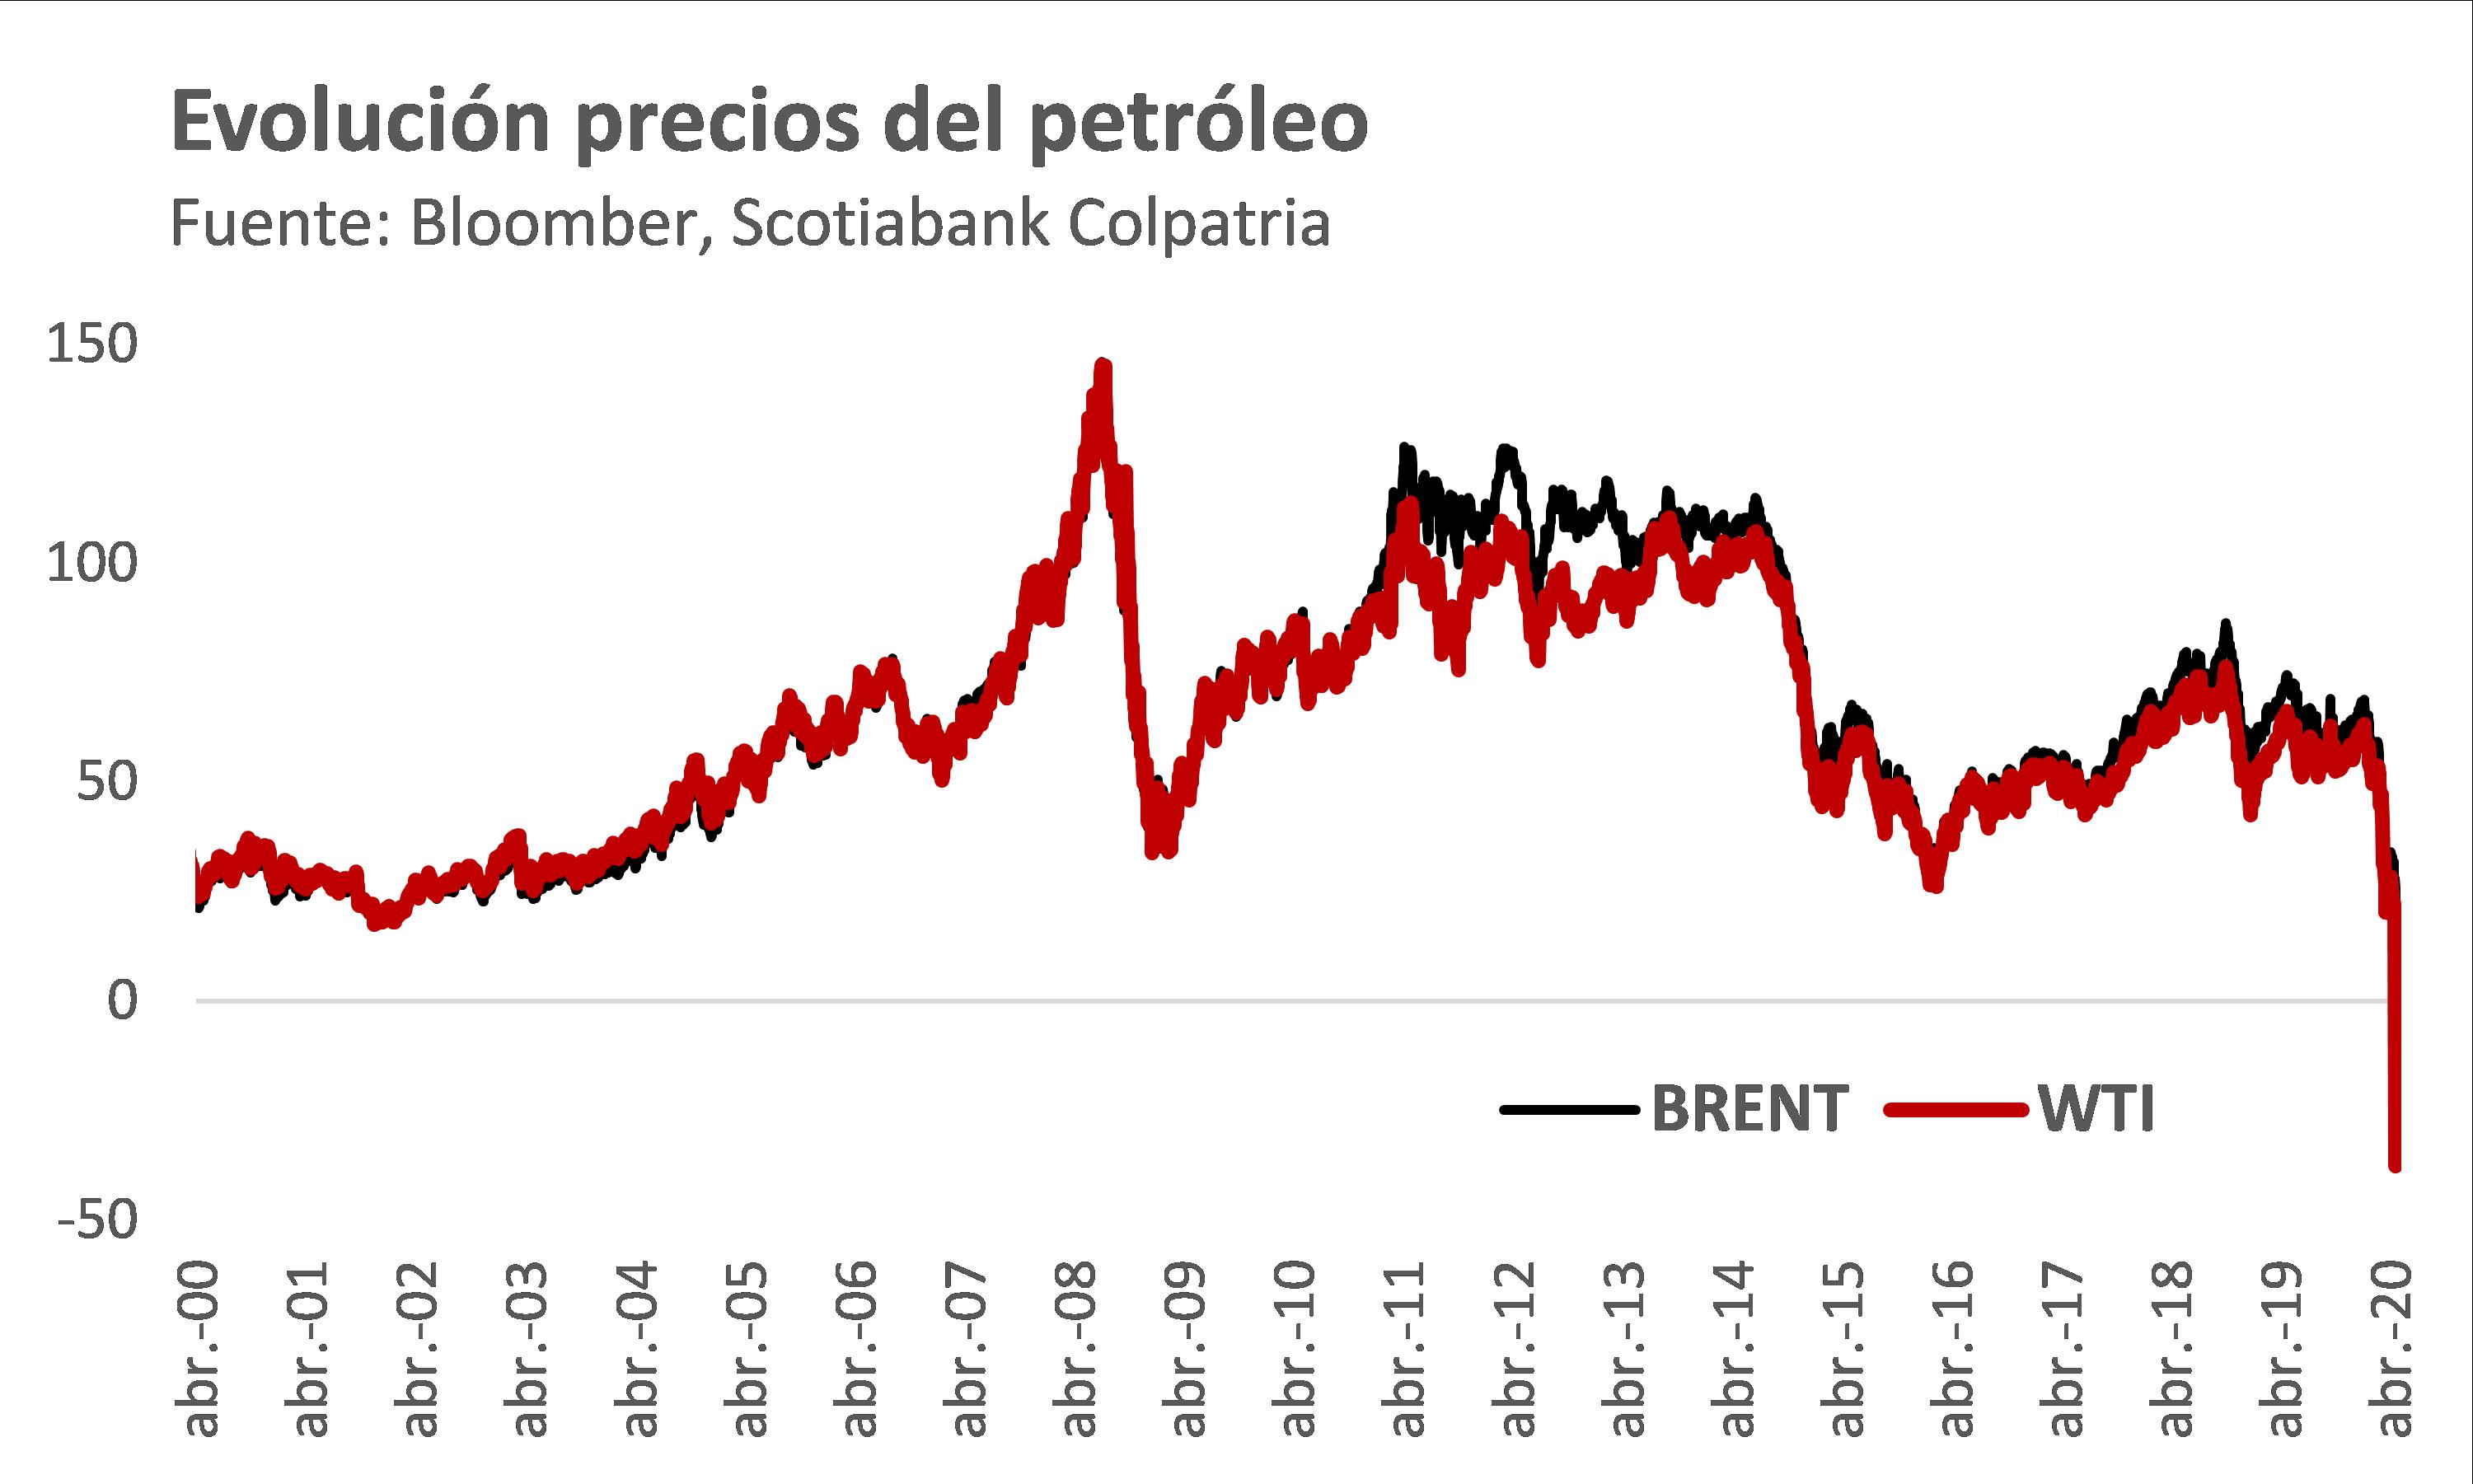 Grafica petroleo